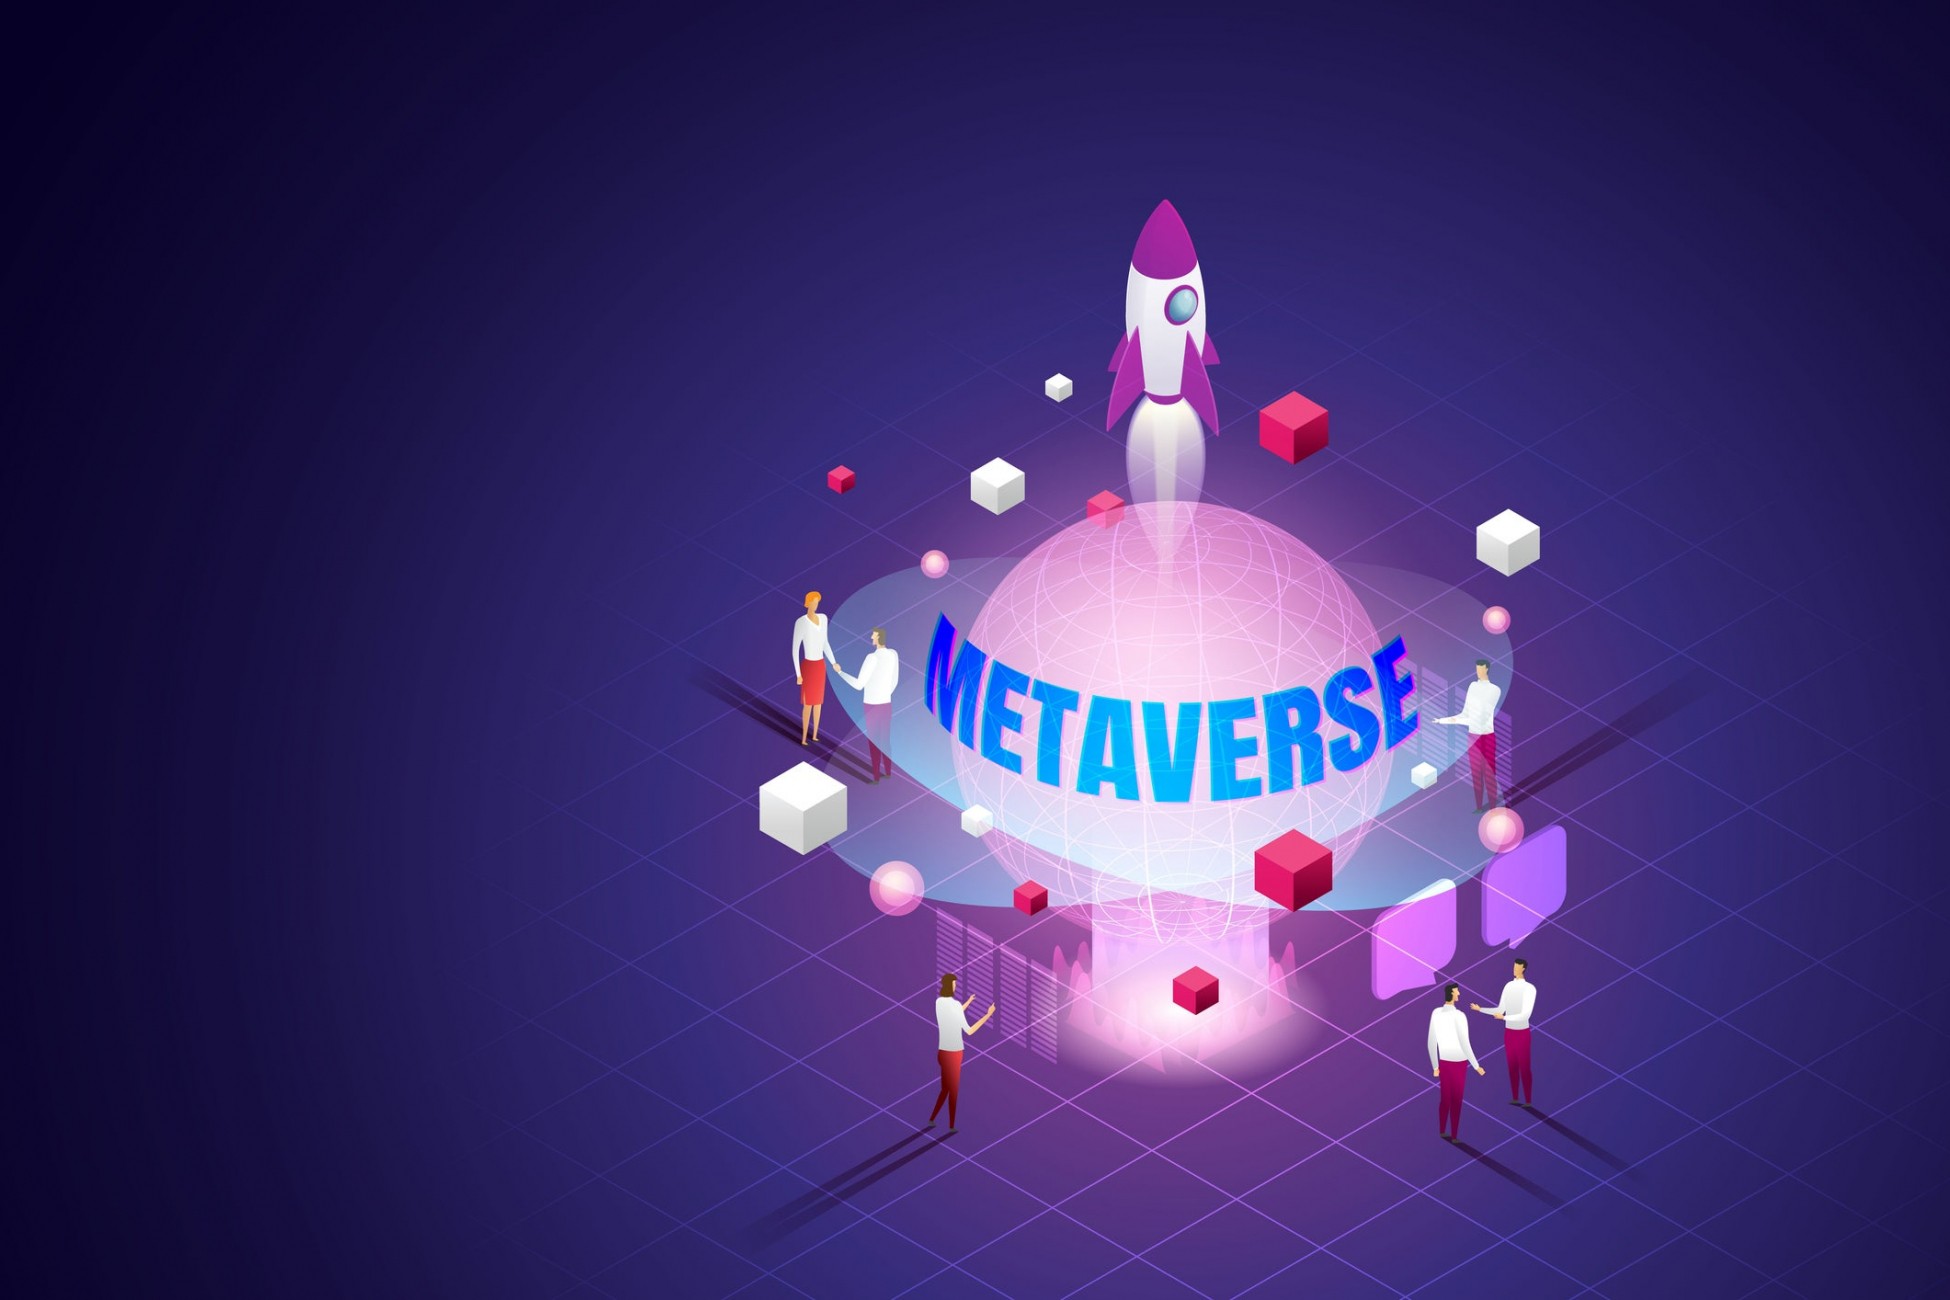 Ο Ζούκερμπεργκ χάνει ( ; ) το στοίχημα του metaverse – Μειώνονται οι χρήστες στην πλατφόρμα της Meta